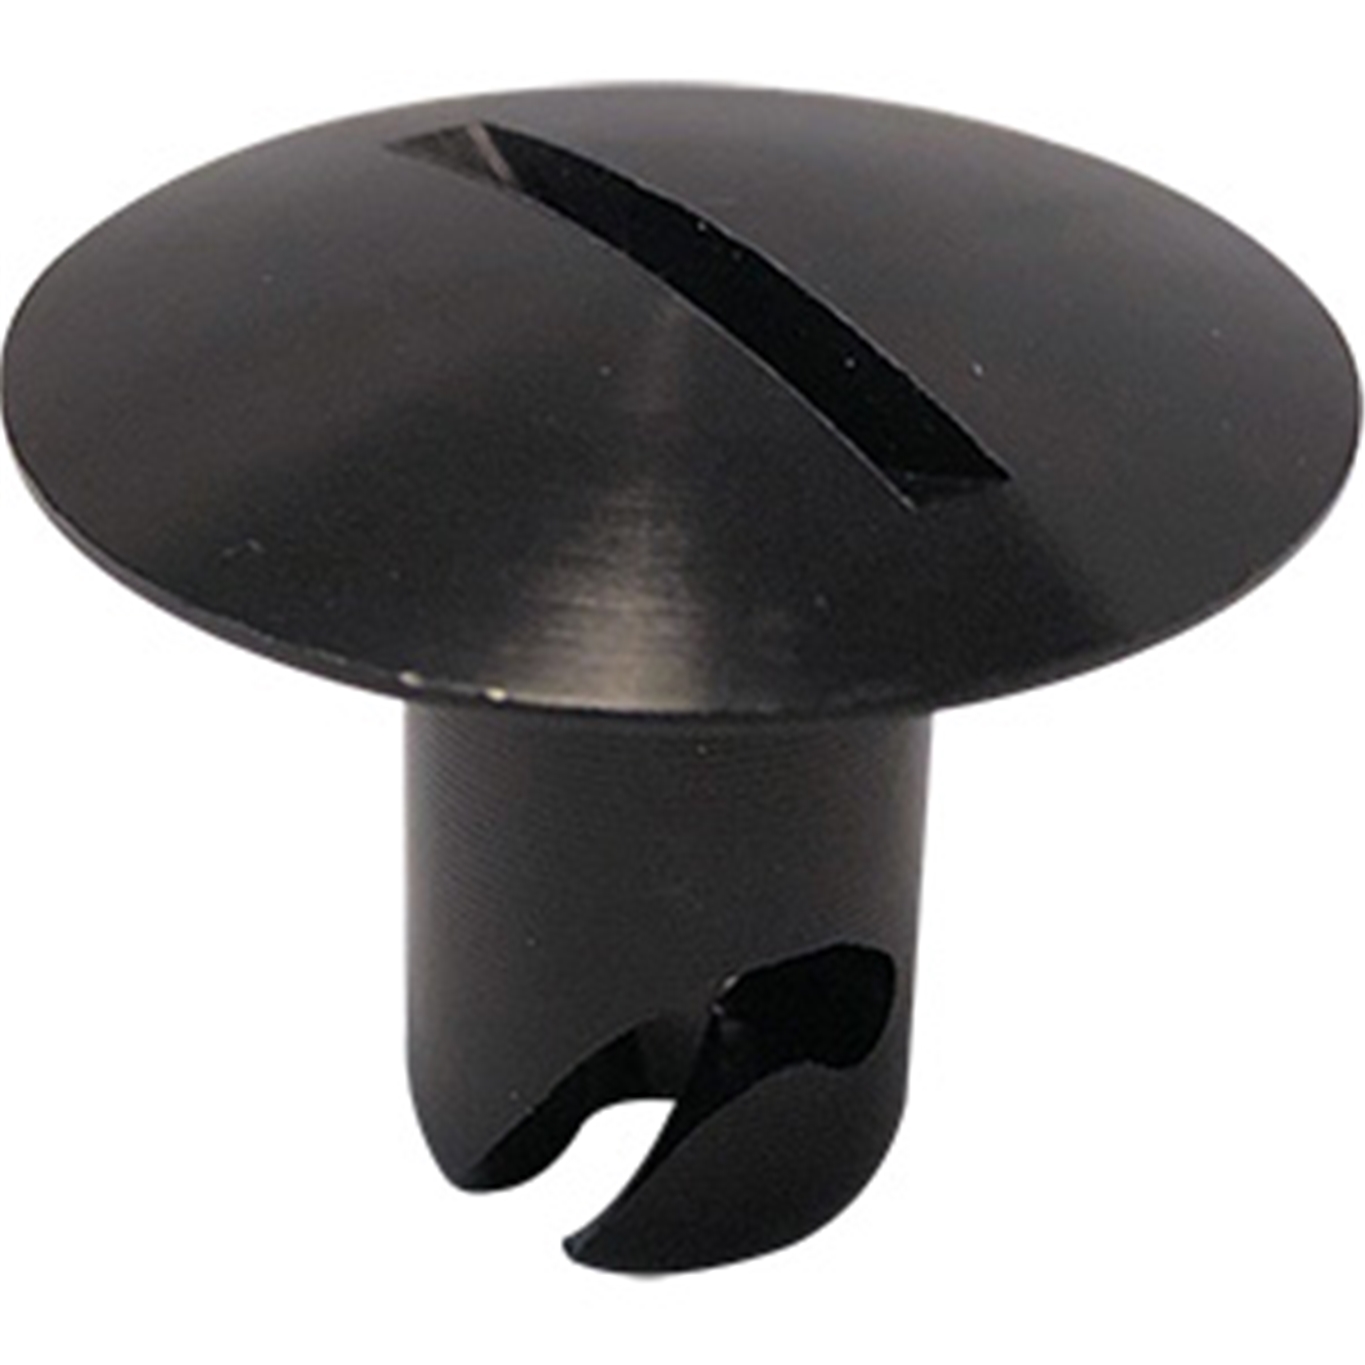 Panelfast Black Big Oval Head Steel 7/16".500 Grip